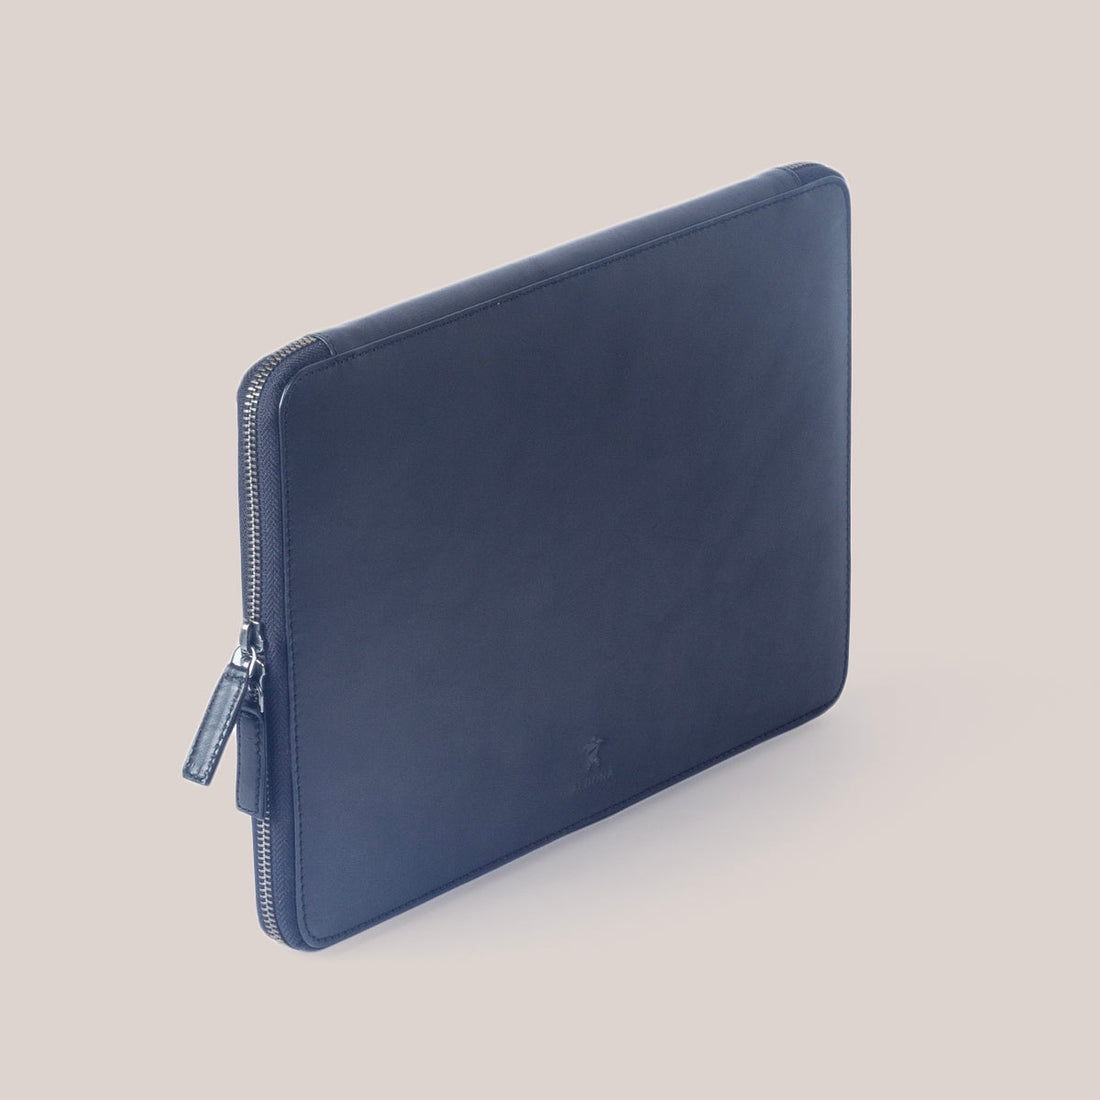 MacBook Zippered Laptop Case - Felt and Tan Crunch